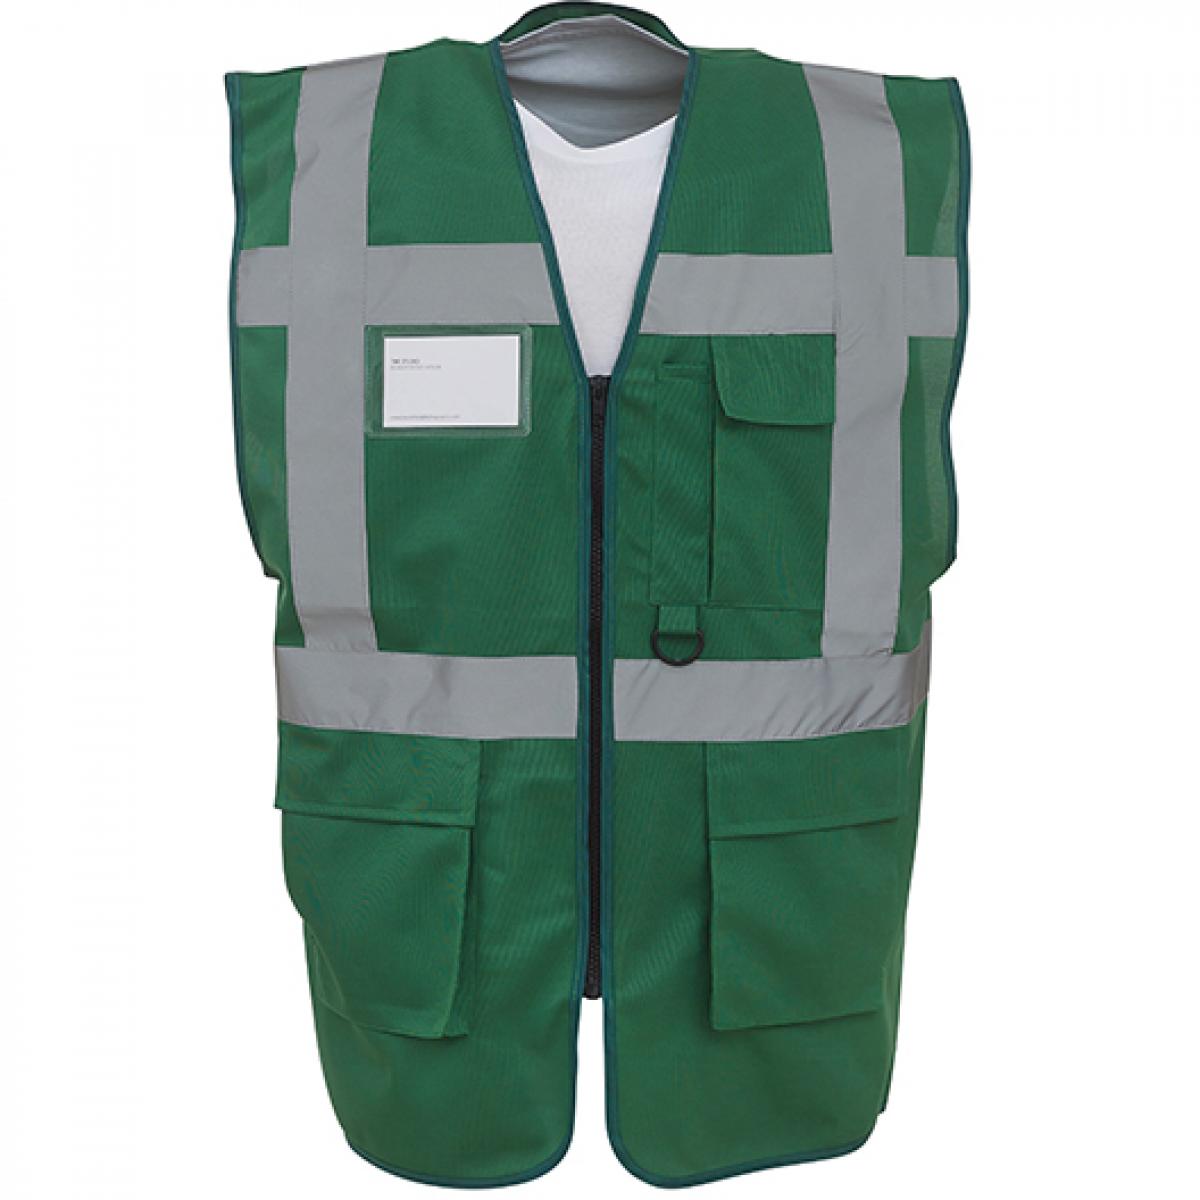 Hersteller: YOKO Herstellernummer: HVW801 Artikelbezeichnung: Herren Multi-Functional Executive Waistcoat Farbe: Paramedic Green